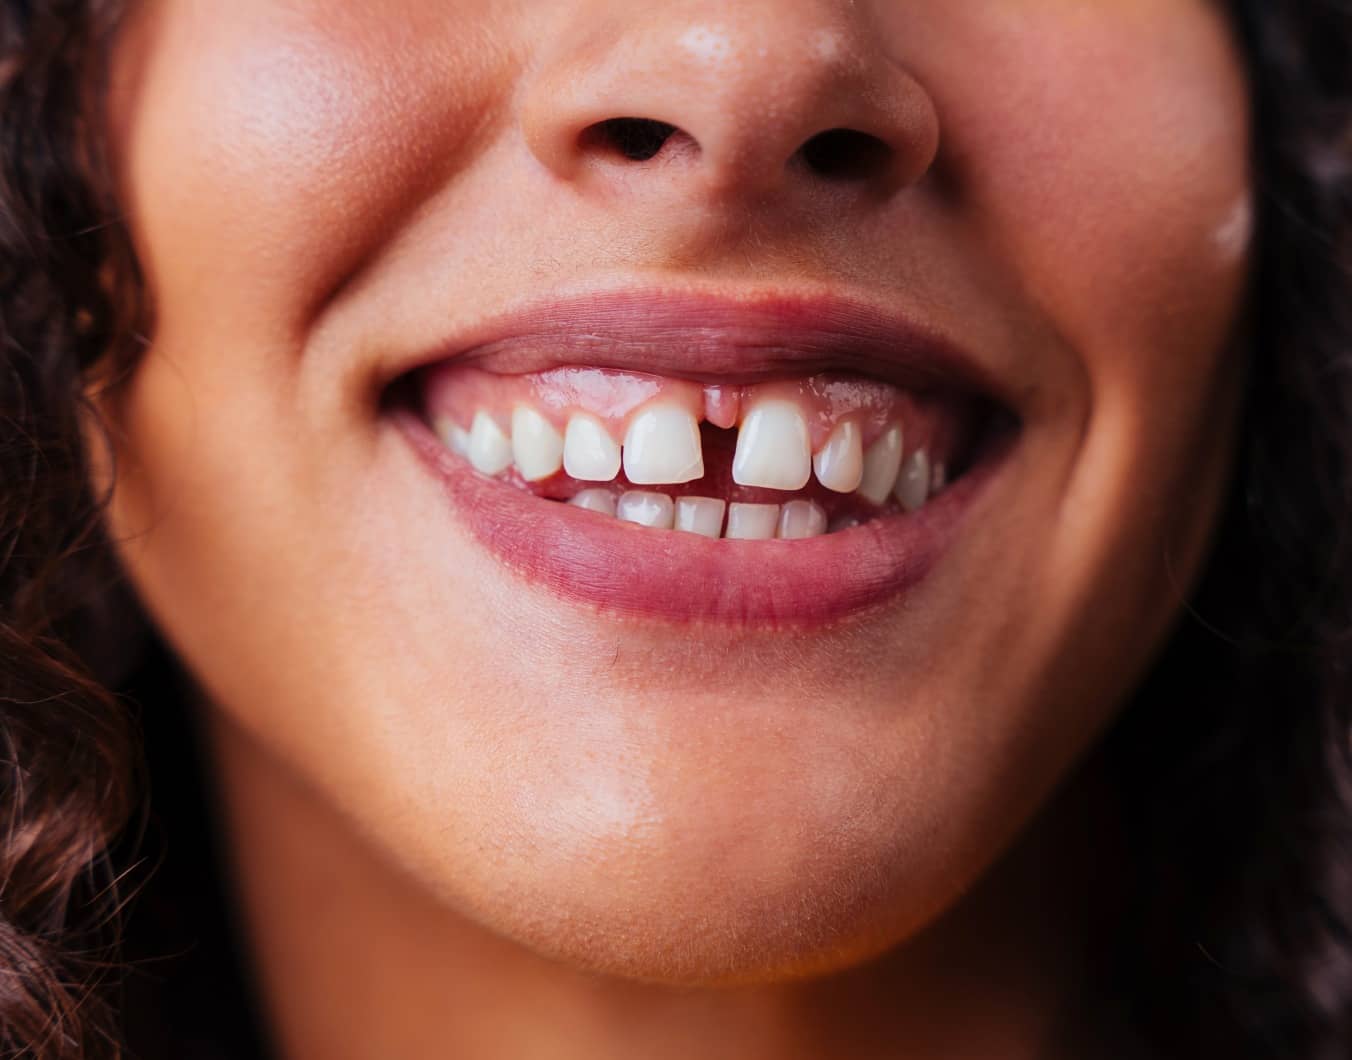 Les facettes dentaires : une solution pour corriger les dents du bonheur | Dr Temstet | Paris